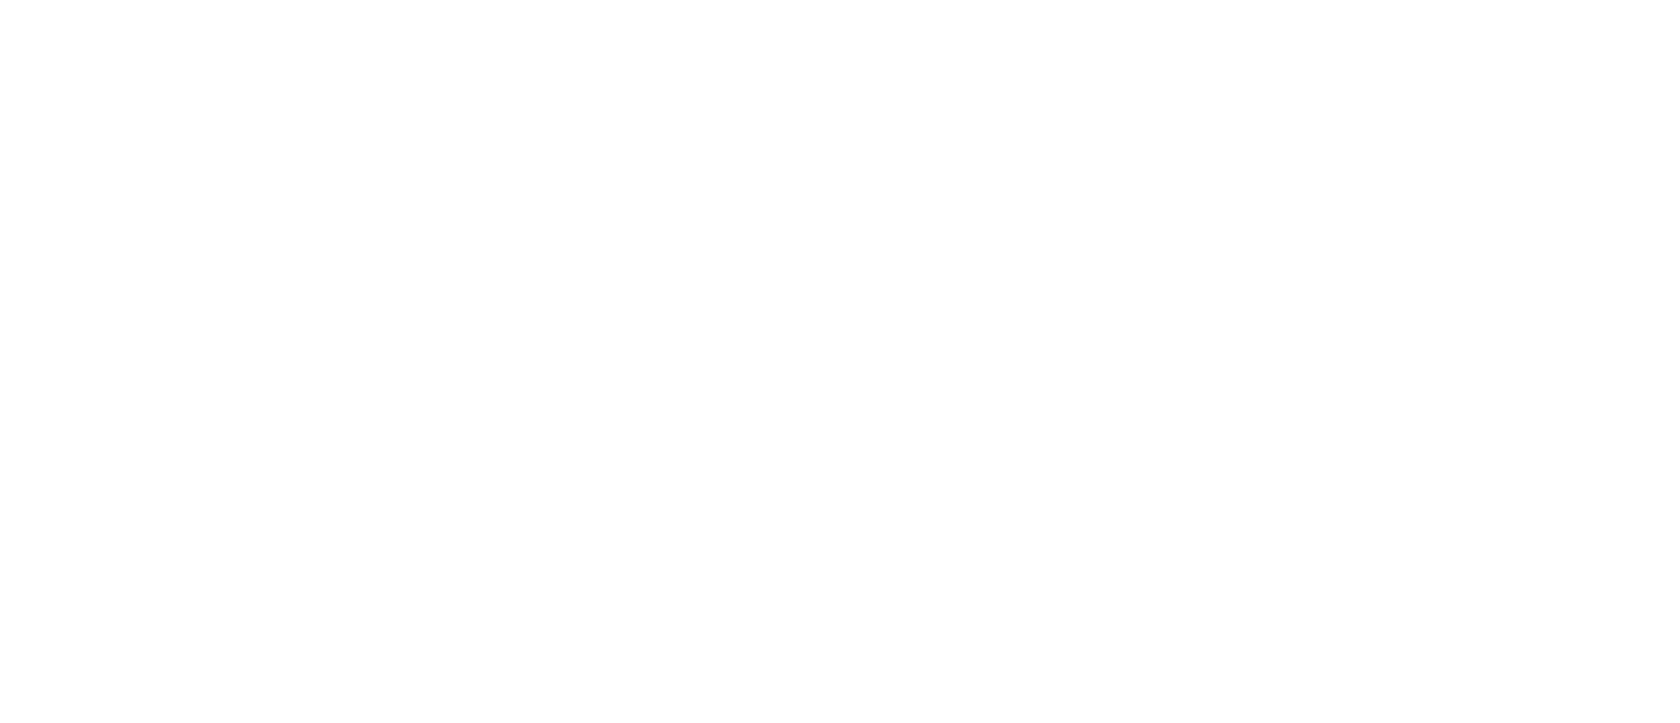 Кейс сервиса BRANDNATION - Дизайн упаковки производителя БАДов. Брендинговое агентство BRANDNATION в Москве и Санкт-Петербурге. Услуги: разработка логотипа и фирменного стиля, дизайн упаковки, брендбук, ребрендинг, разработка сайта.